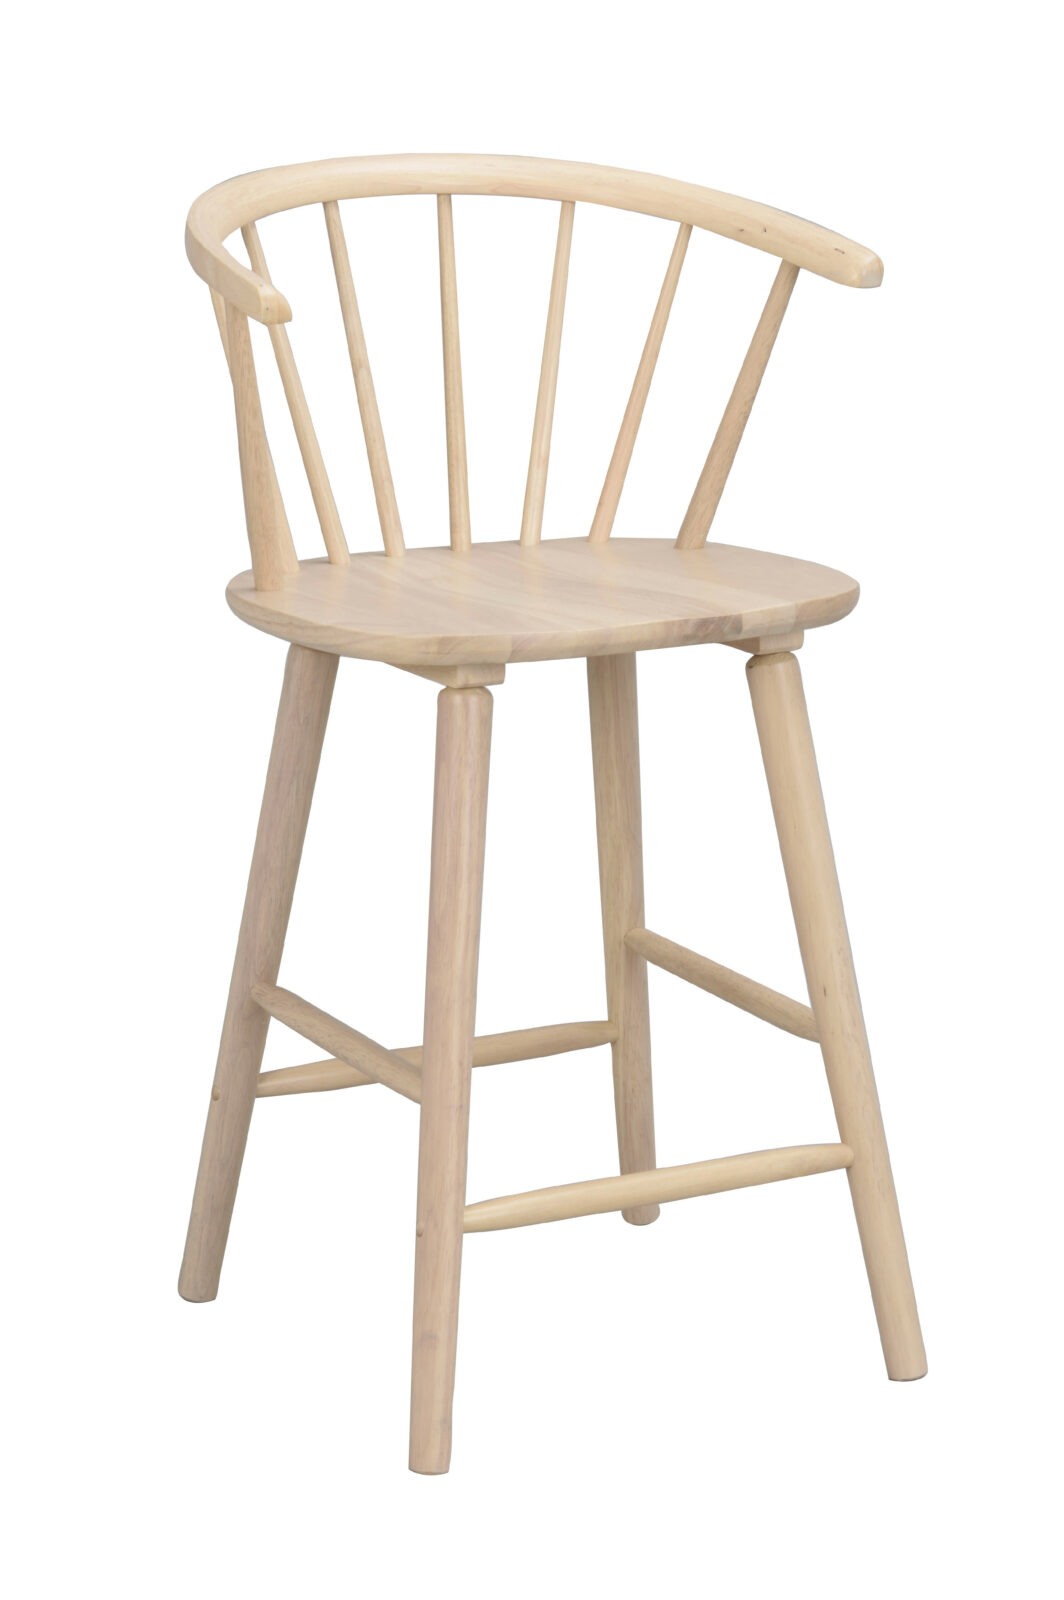 ROWICO Dřevěná barová židle CARMEN světlá